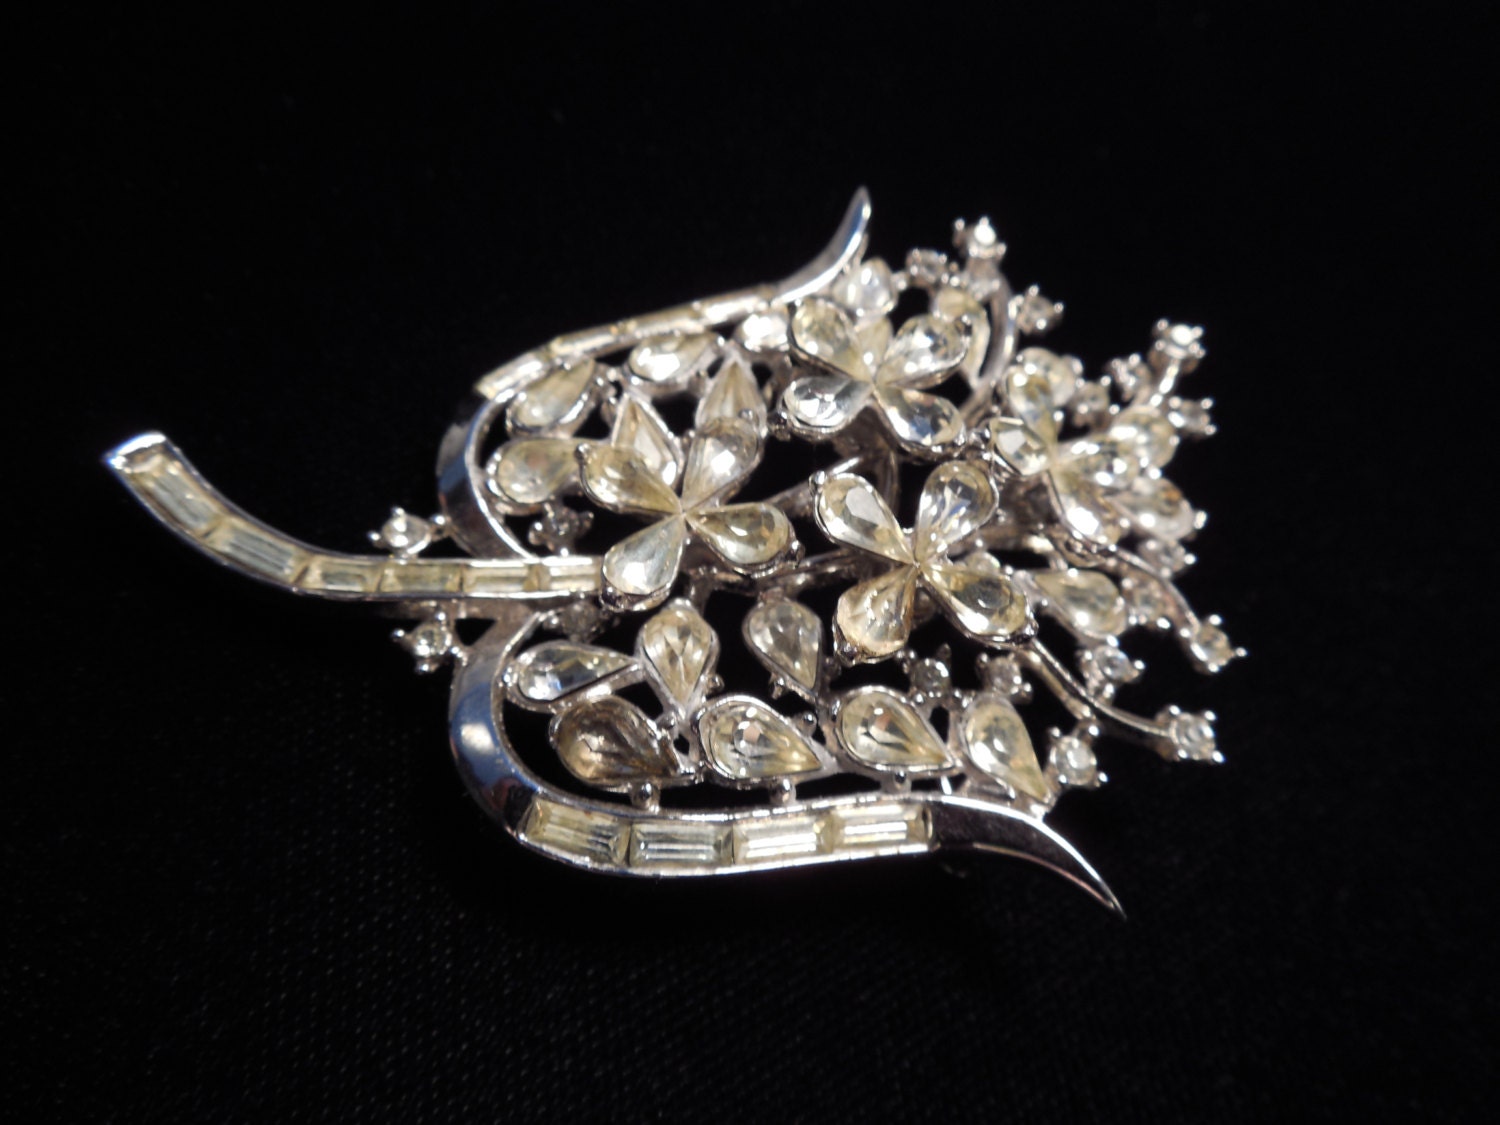 Trifari Floral Brooch. Sparkling clear rhinestone pin by